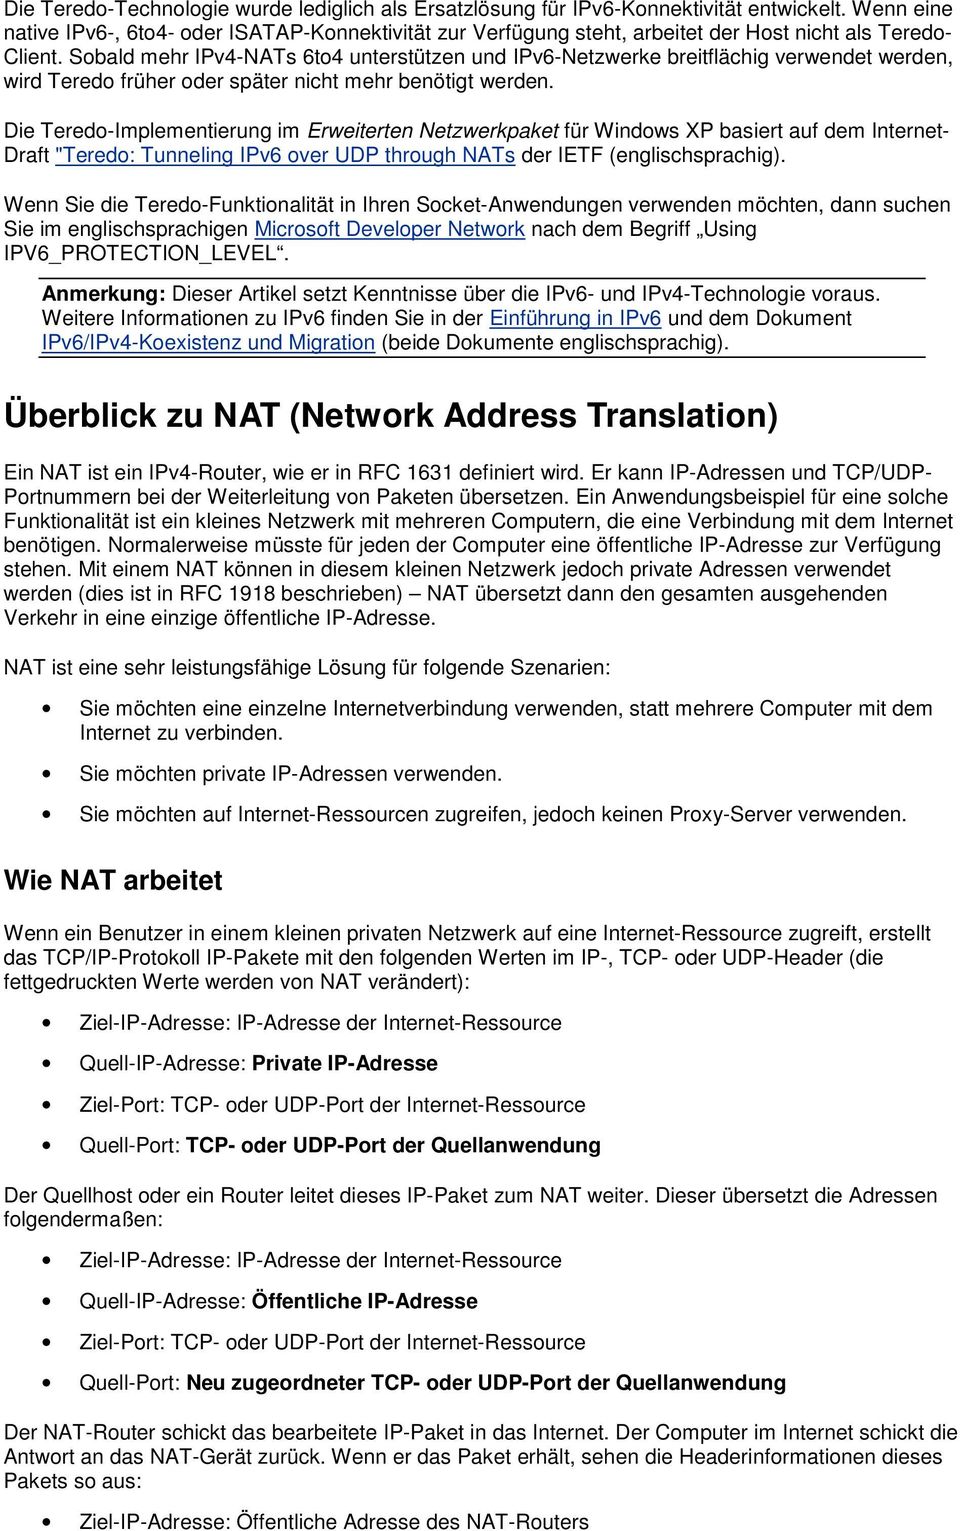 Sobald mehr IPv4-NATs 6to4 unterstützen und IPv6-Netzwerke breitflächig verwendet werden, wird Teredo früher oder später nicht mehr benötigt werden.